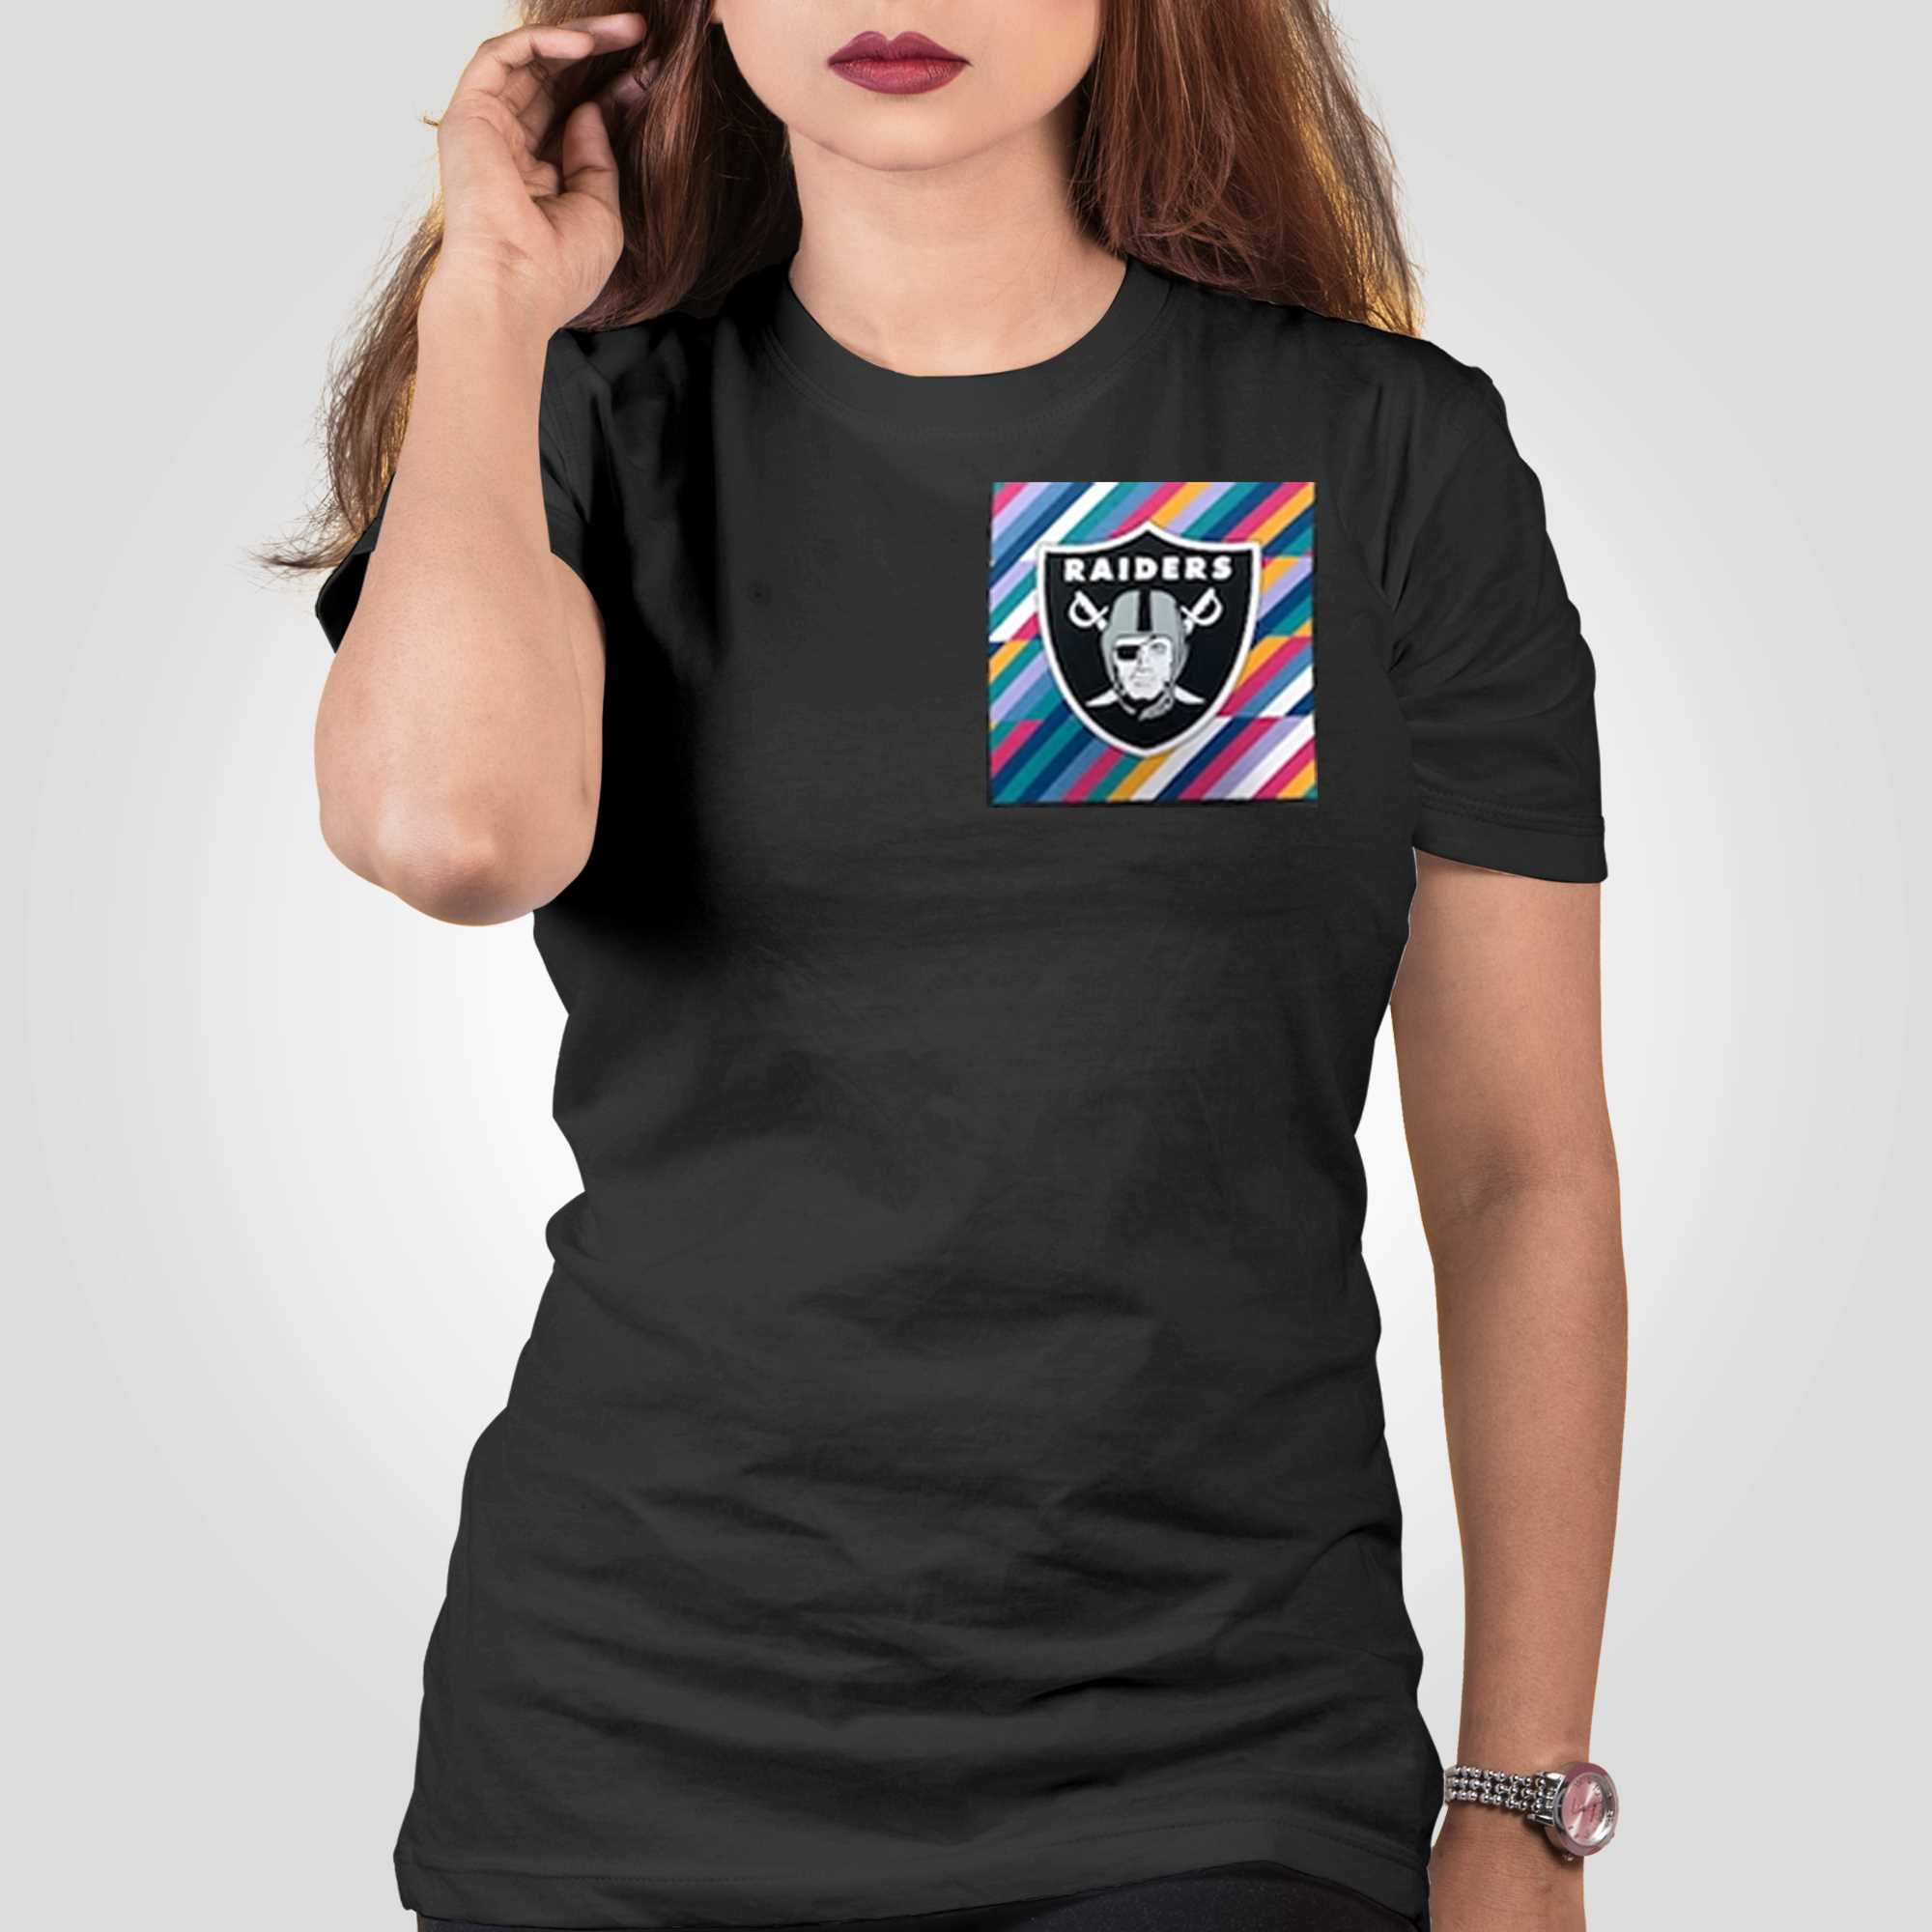 Nike Fashion (NFL Las Vegas Raiders) Women's T-Shirt.